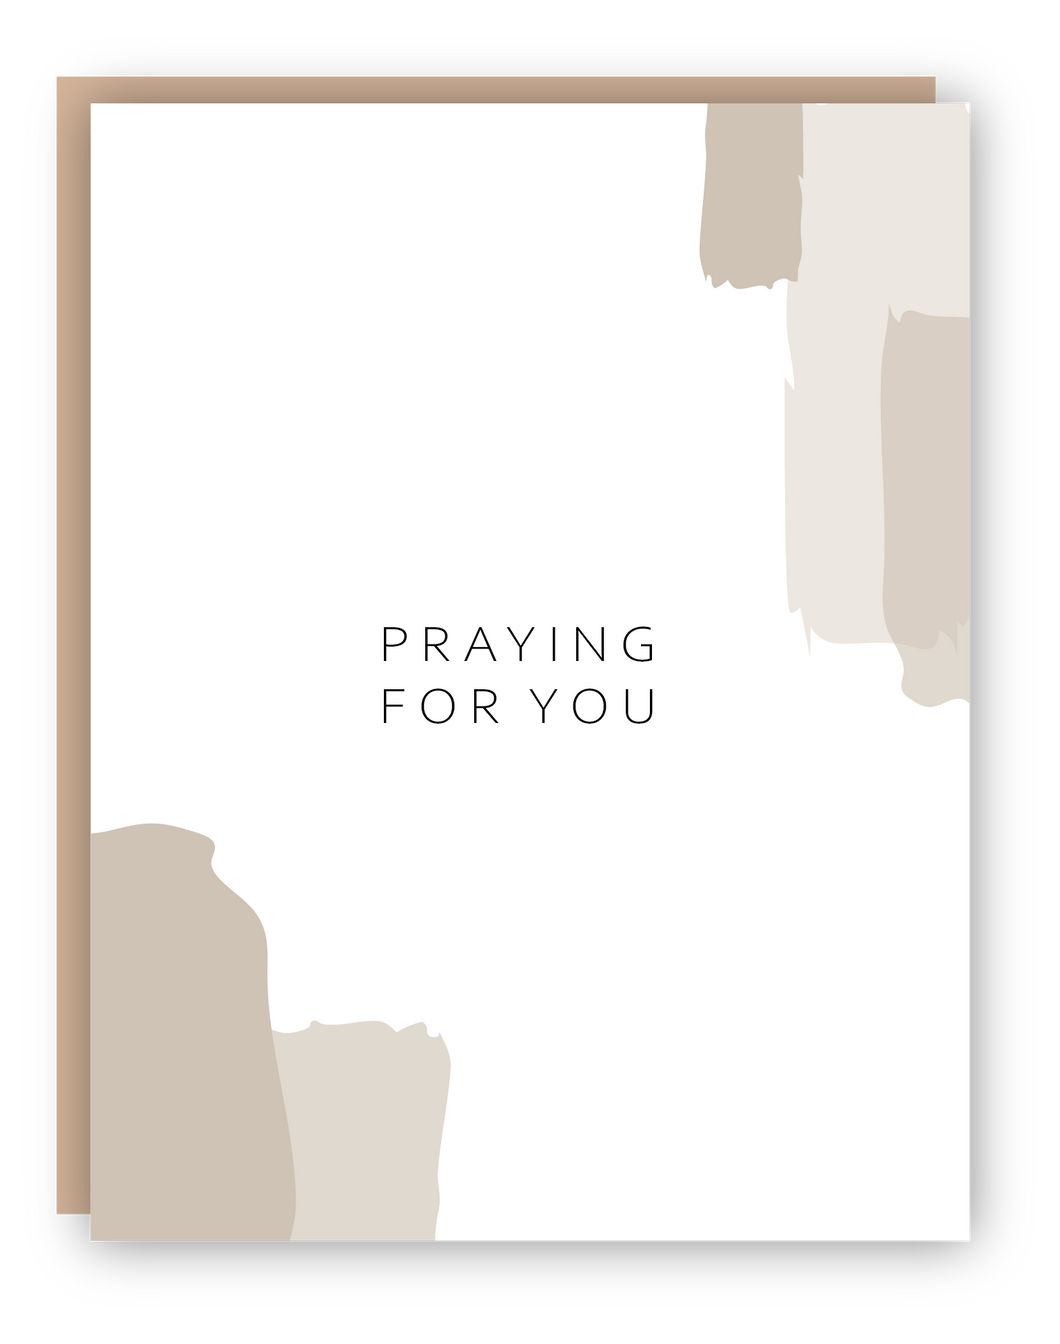 PRAYING FOR YOU